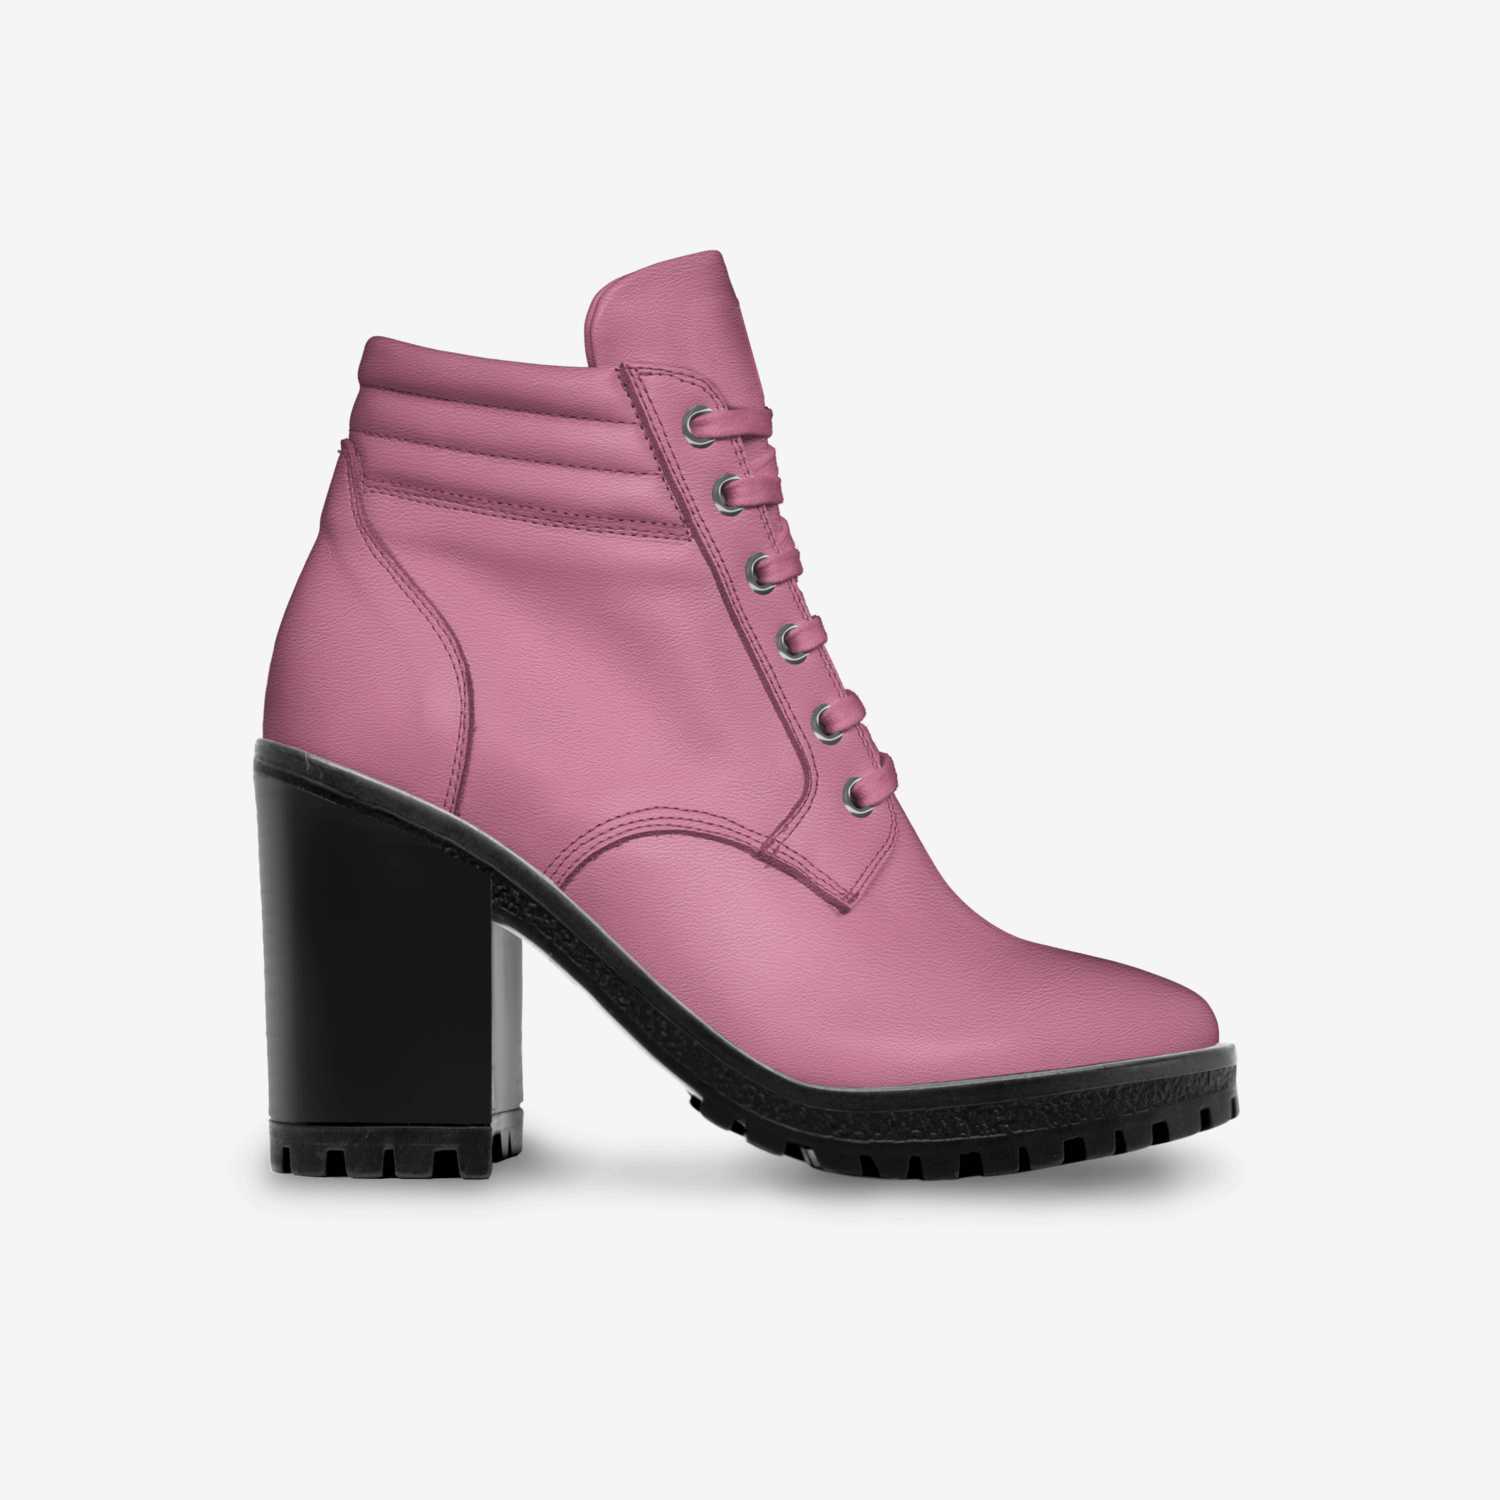 Oksana custom made in Italy shoes by Oksana Ringsma | Side view